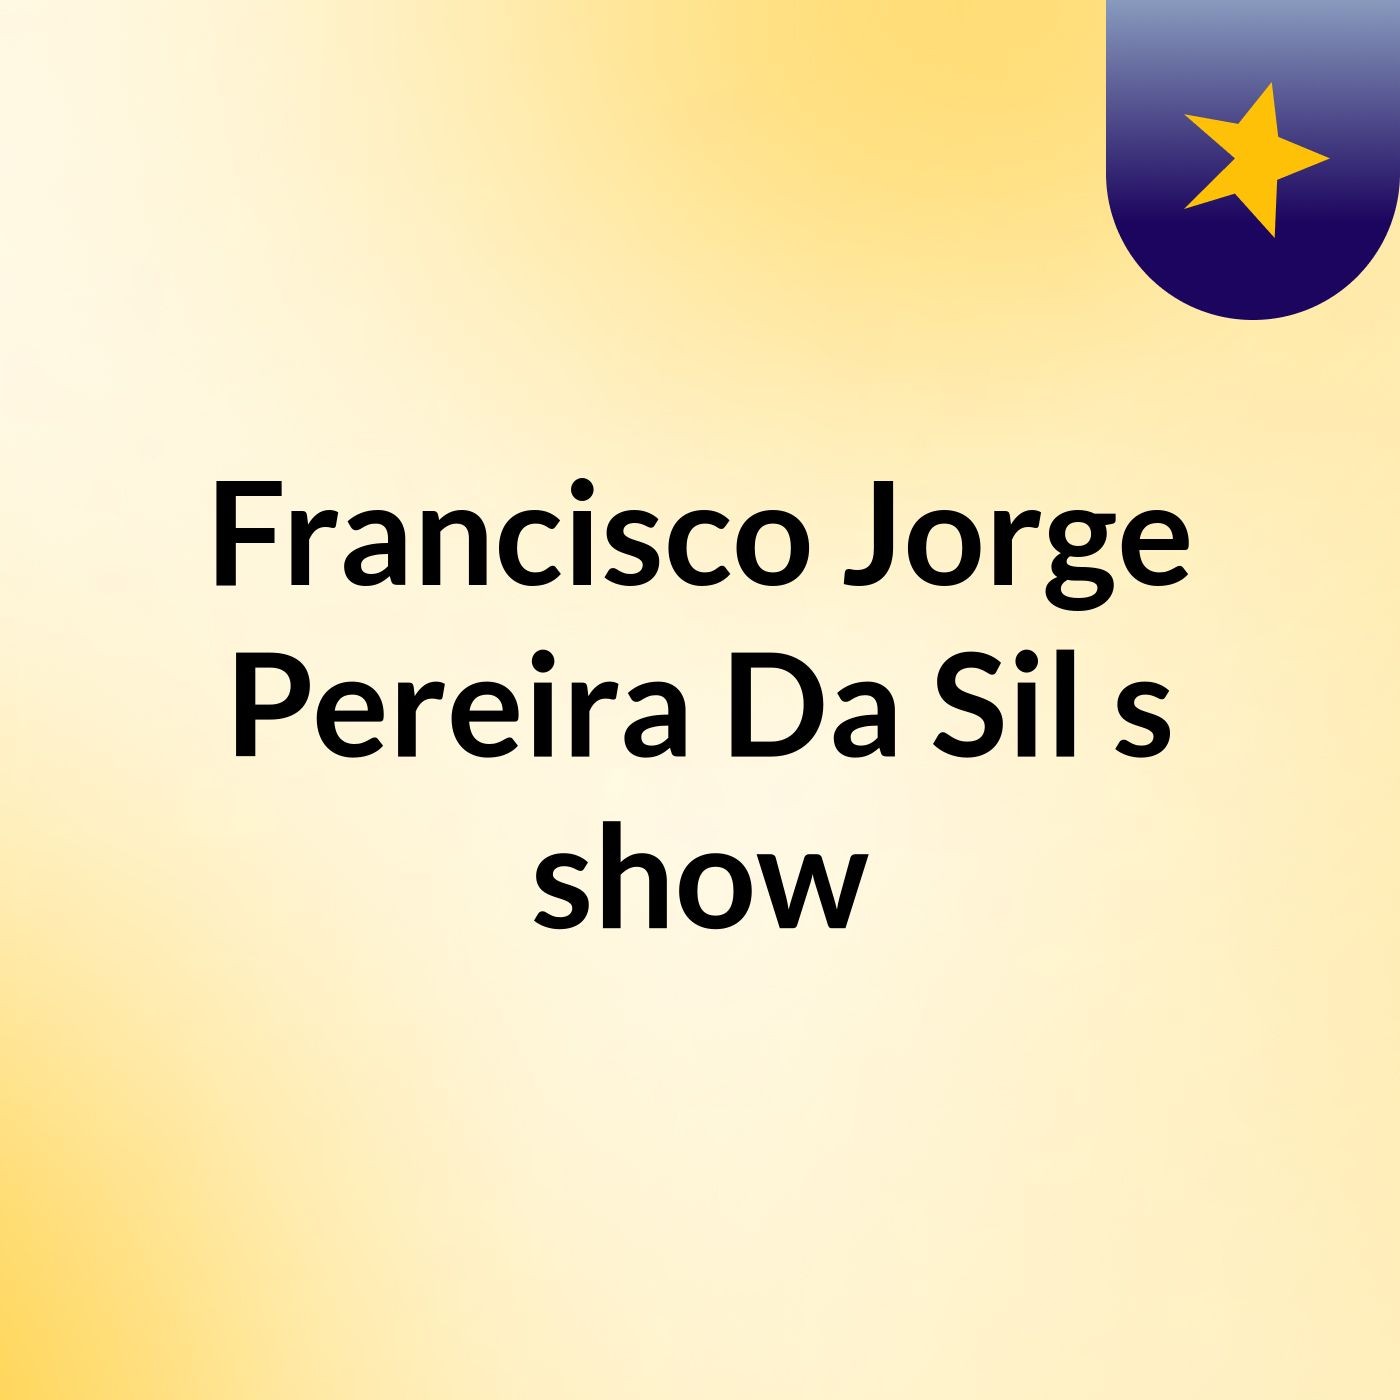 Francisco Jorge Pereira Da Sil's show